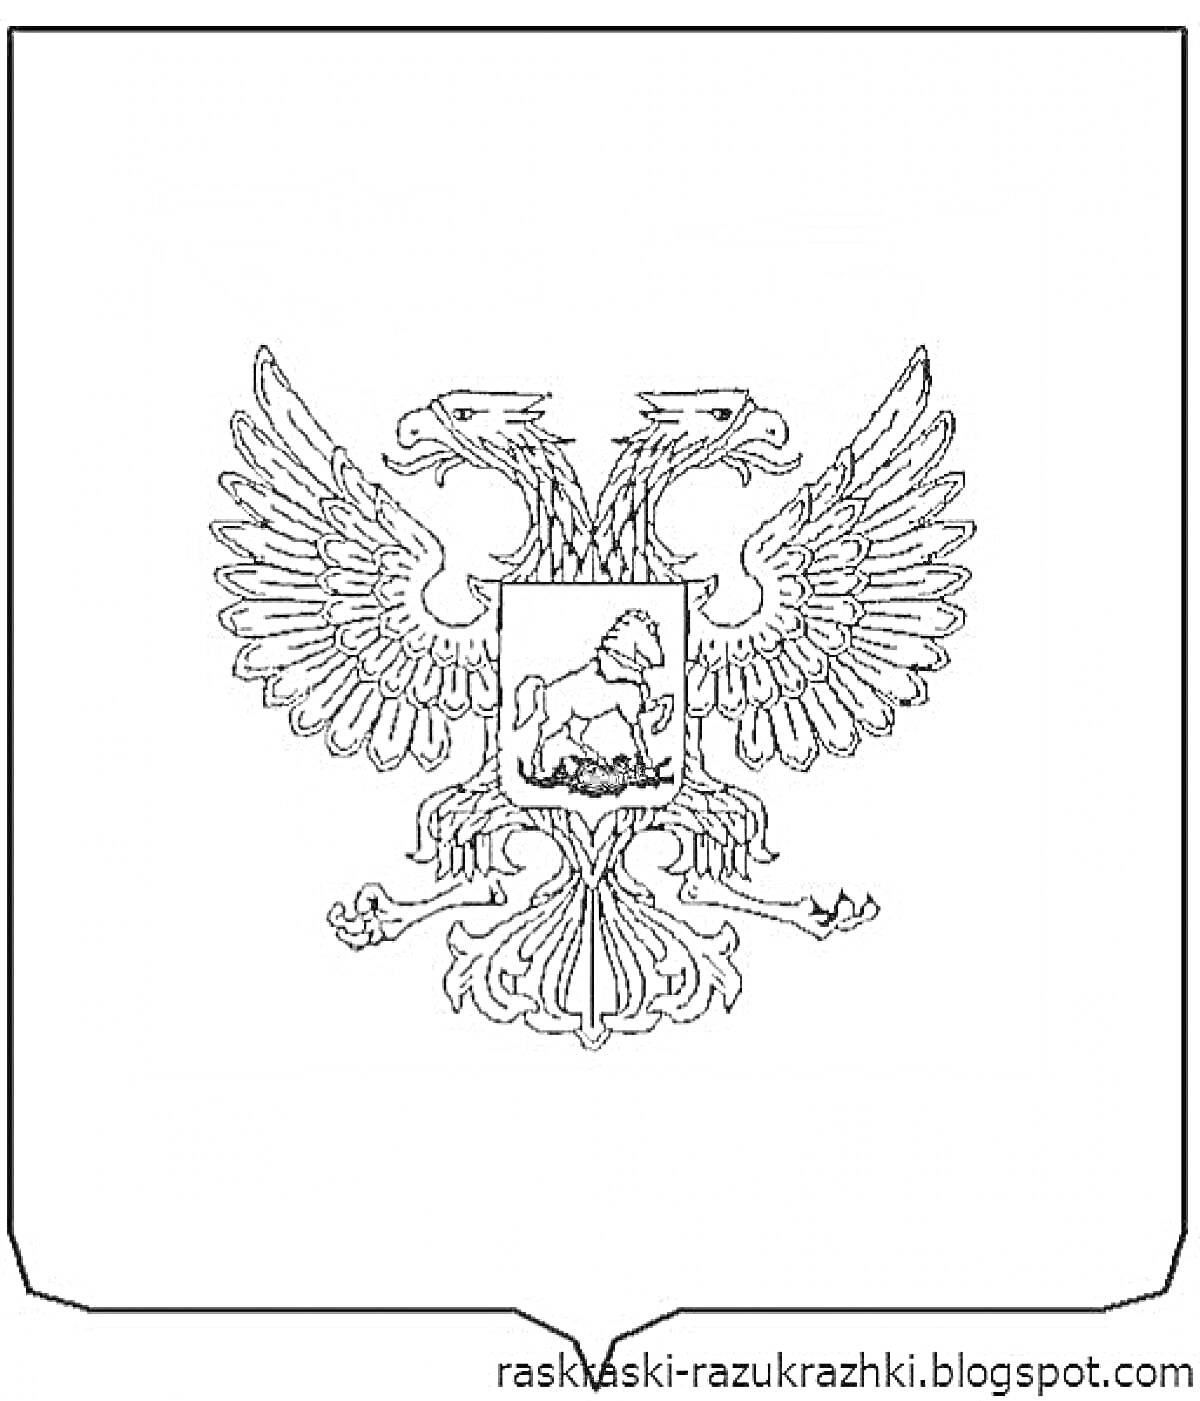 Герб России - двуглавый орел с коронами, скипетром и державой, Московский герб с Георгием Победоносцем в центре